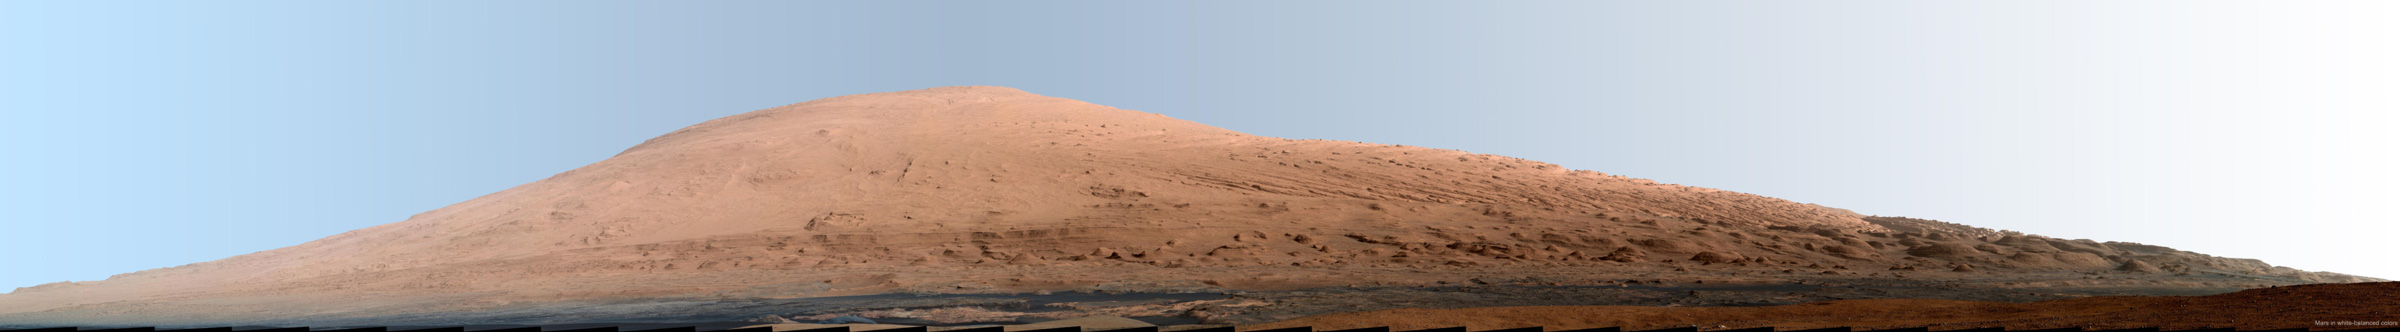 Le mont Sharp, dont l’origine est inconnue, est l’objet d’étude privilégié de Curiosity. On sait seulement&nbsp;que les paysages environnants de cette montagne ont été façonnés quand la Planète rouge était beaucoup plus chaude et humide qu'aujourd'hui. © Nasa, JPL